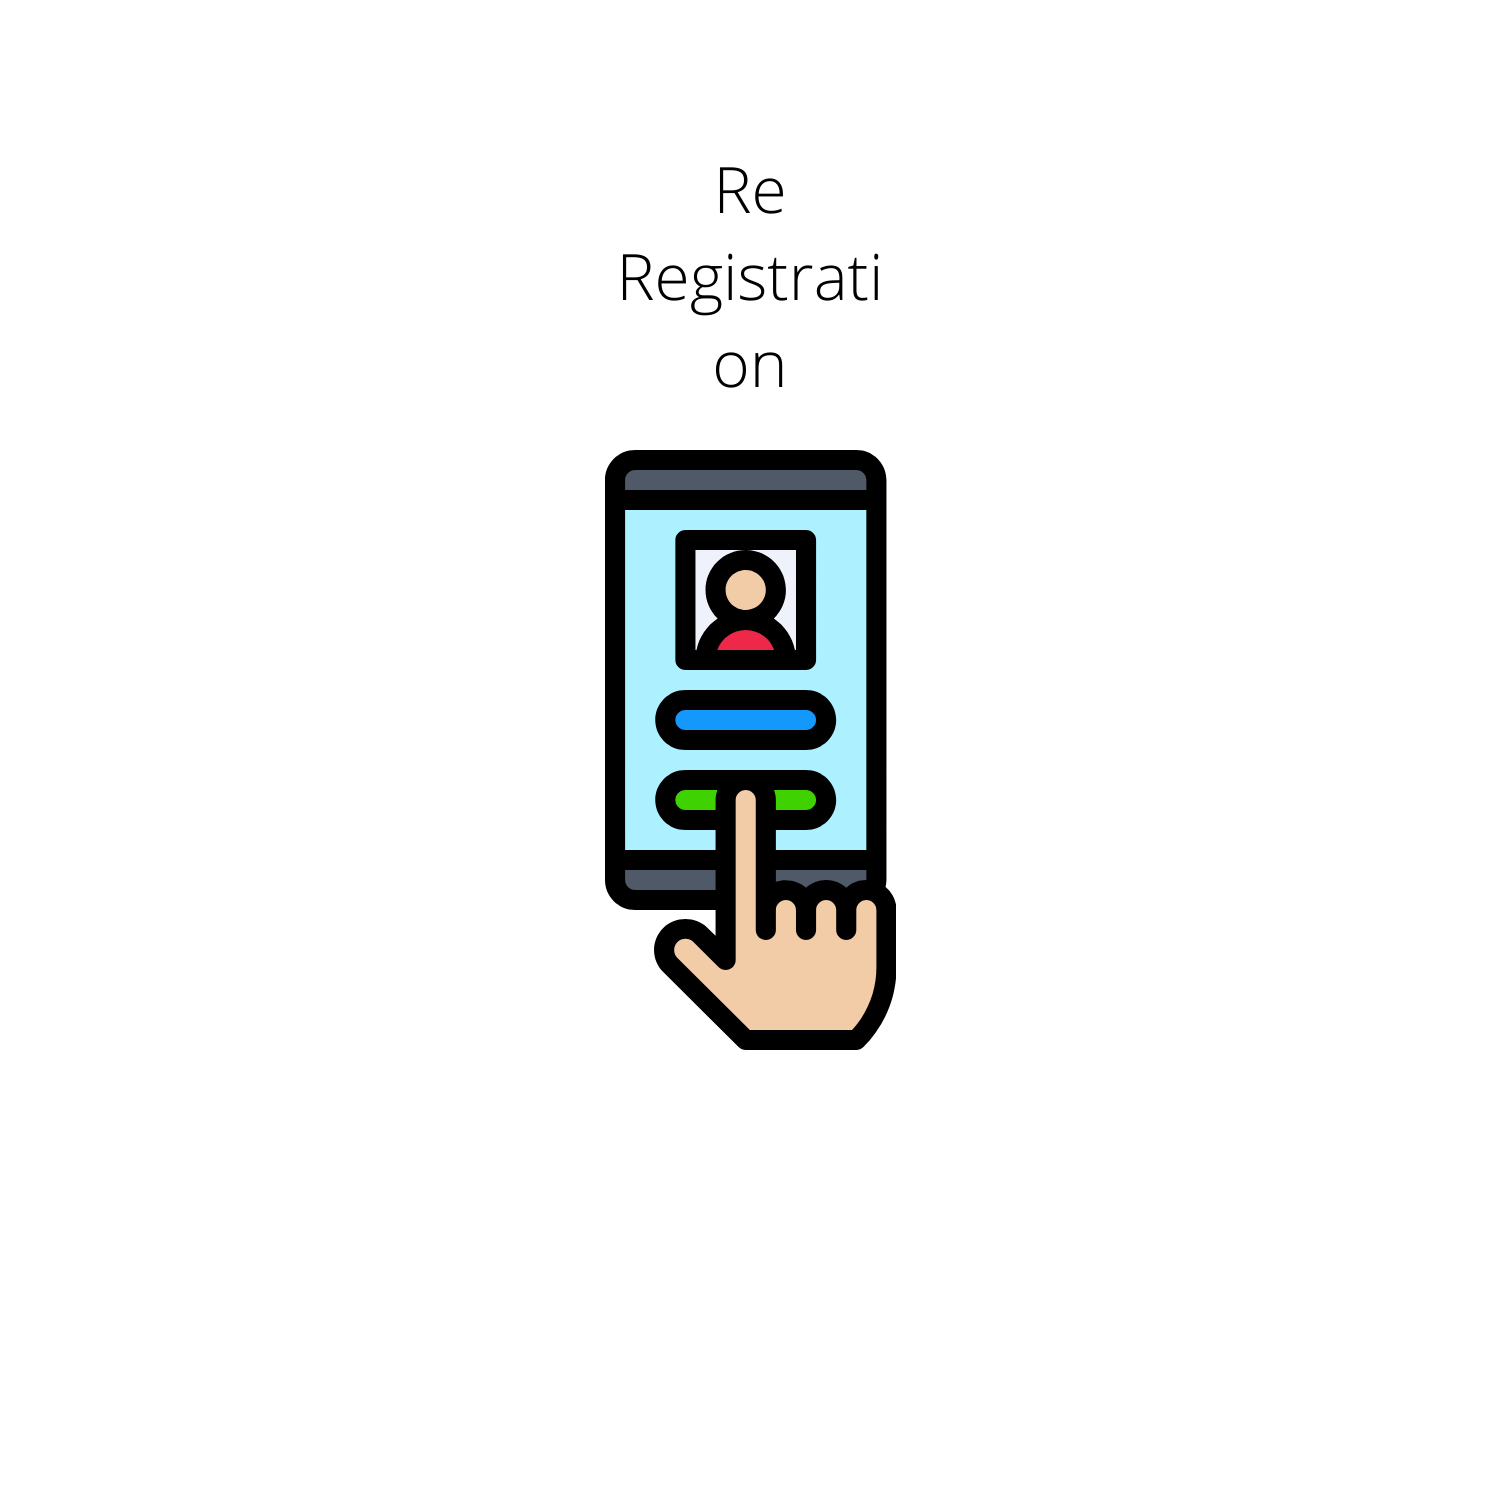 Re- Registration